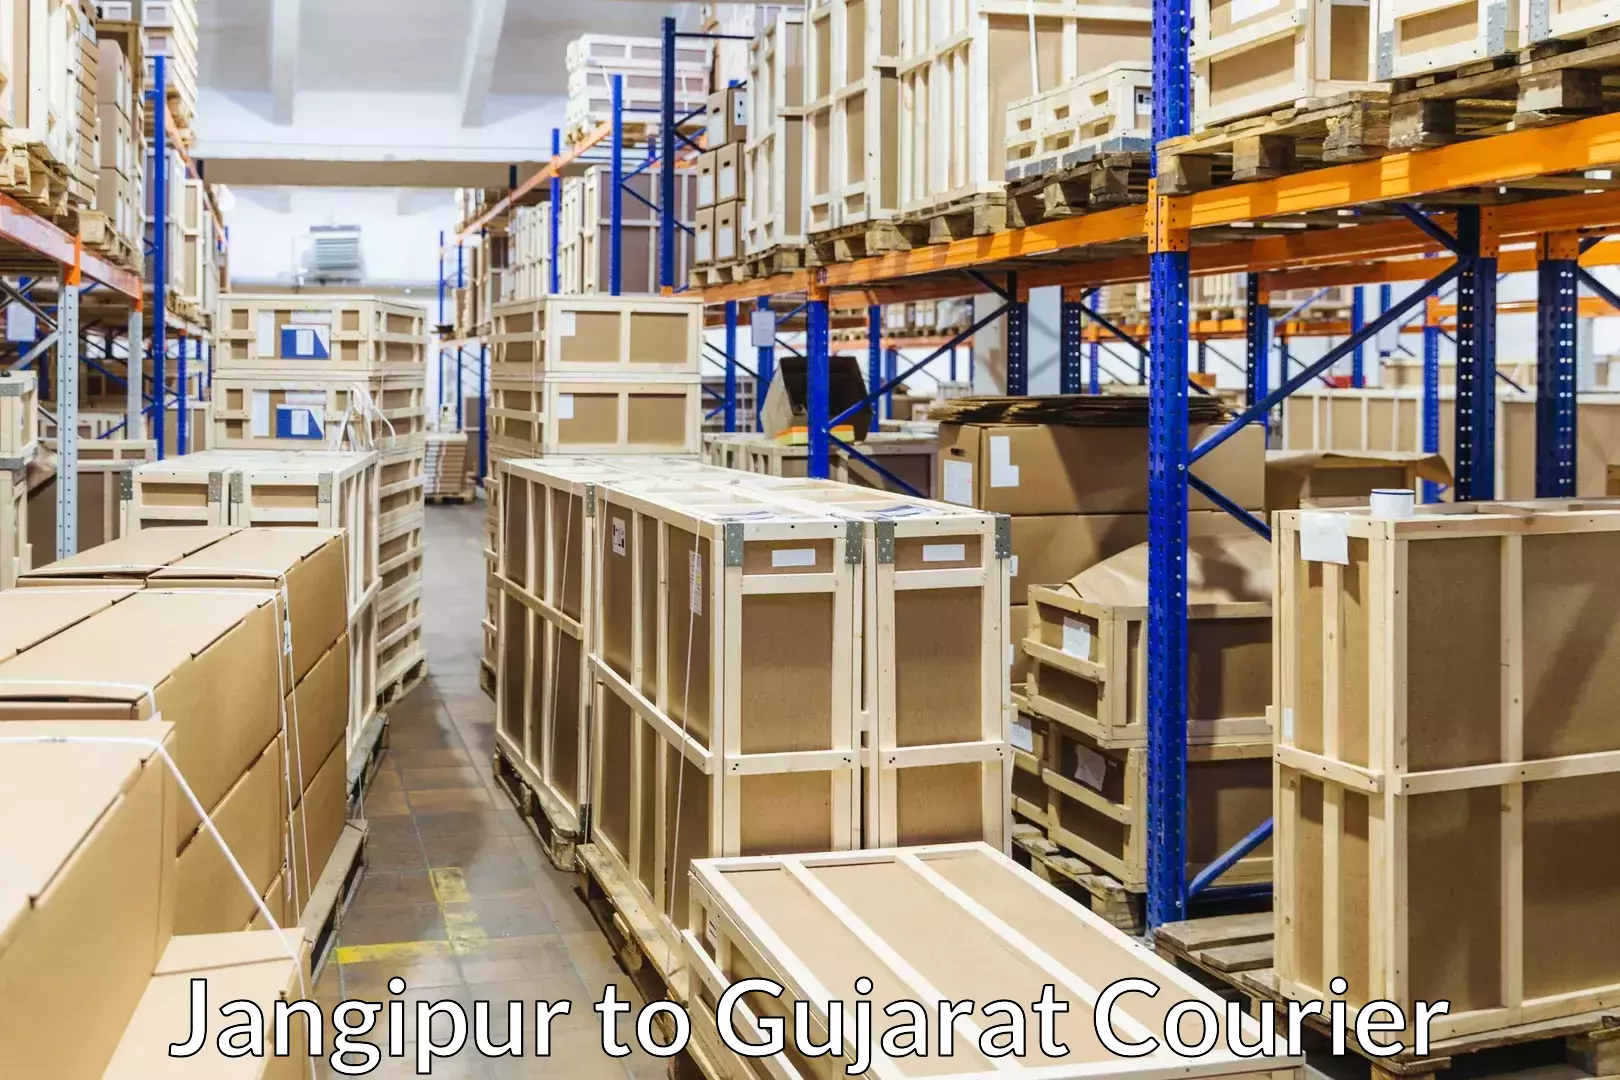 Furniture transport and storage Jangipur to Gujarat